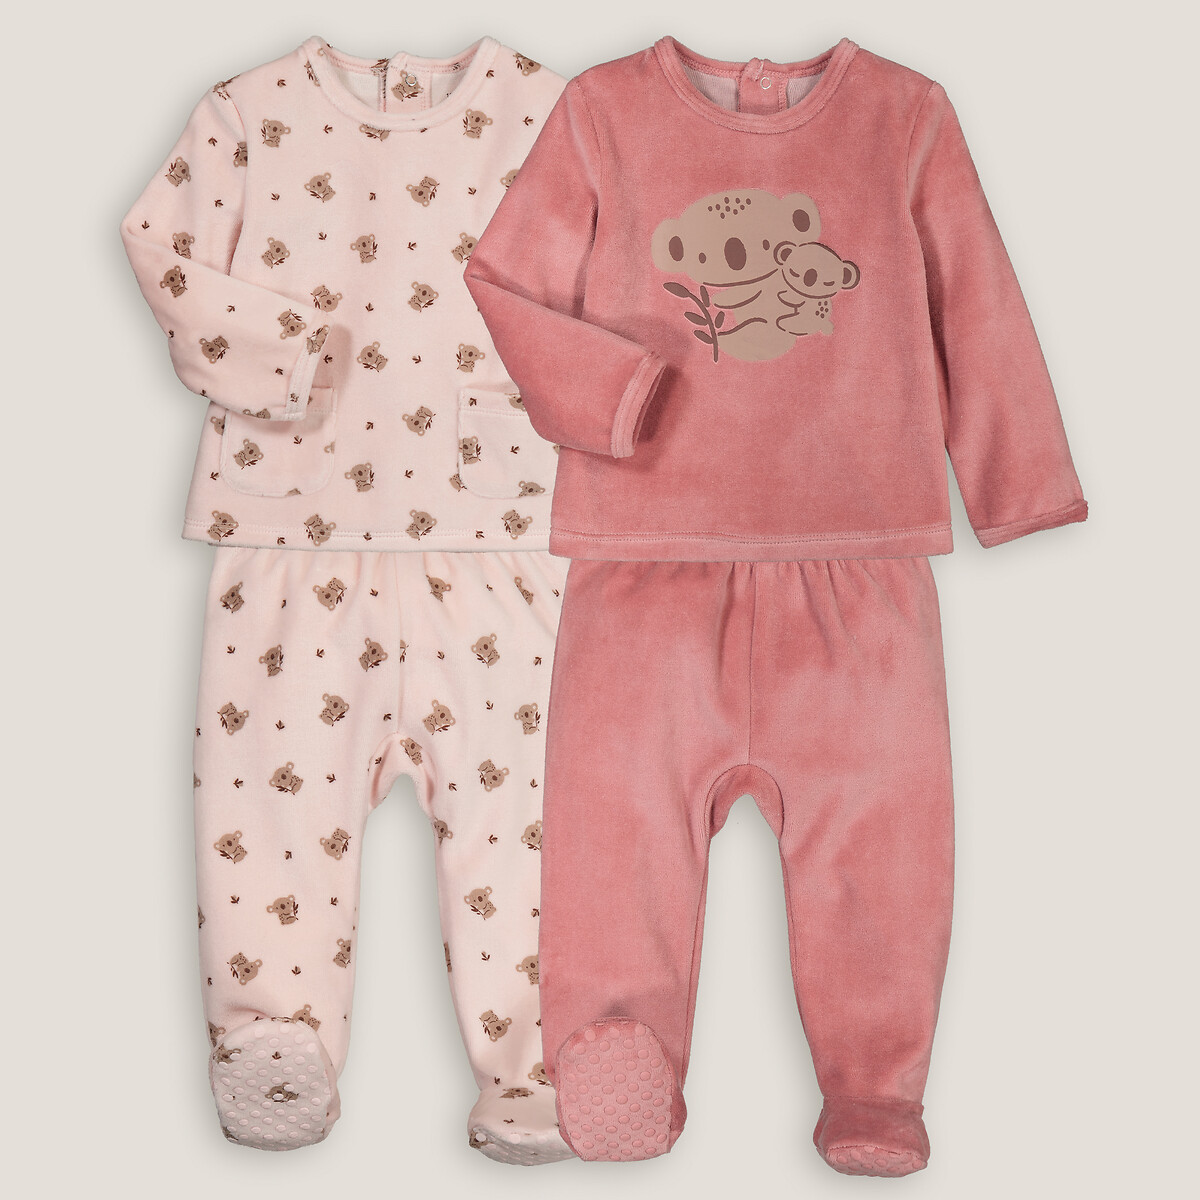 Комплект из двух пижам раздельных из велюра принт коалы 4 года - 102 см розовый комплект из двух пижам раздельных из трикотажа интерлок 2 года 86 см синий